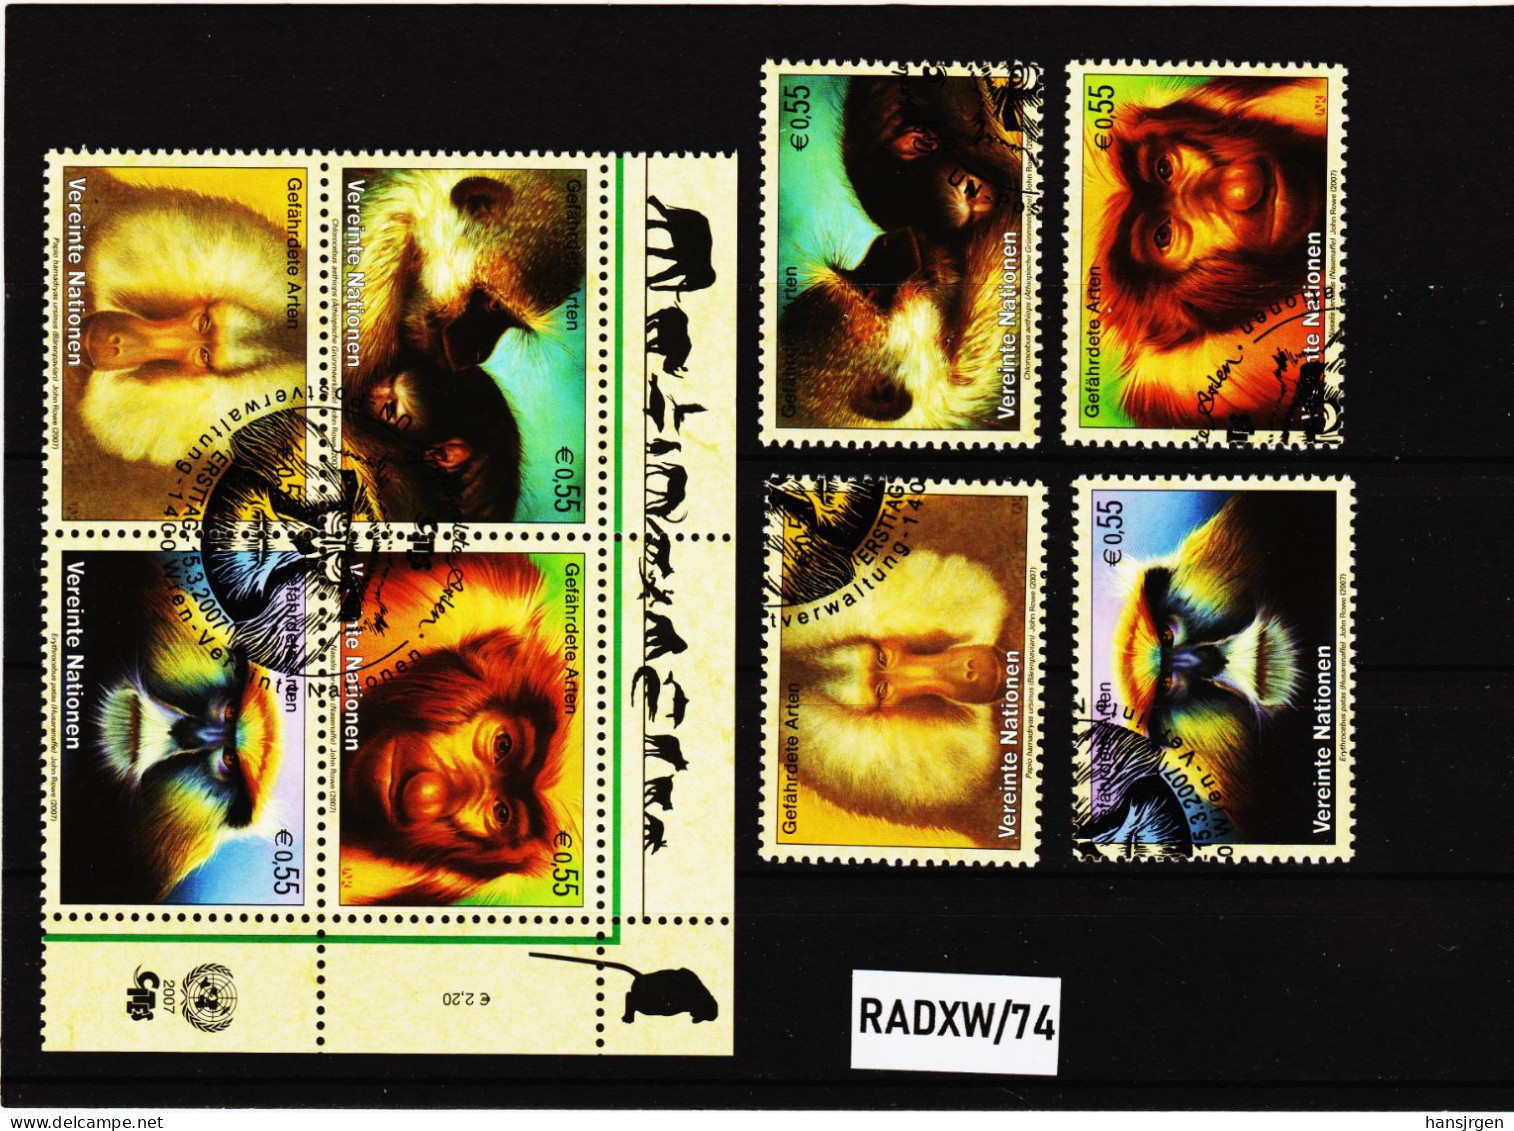 RADXW/74 VEREINTE NATIONEN UNO WIEN 2007  MICHL 485/88 SATZ  + VIERERBLOCK  Gestempelt Siehe ABBILBUNG - Used Stamps